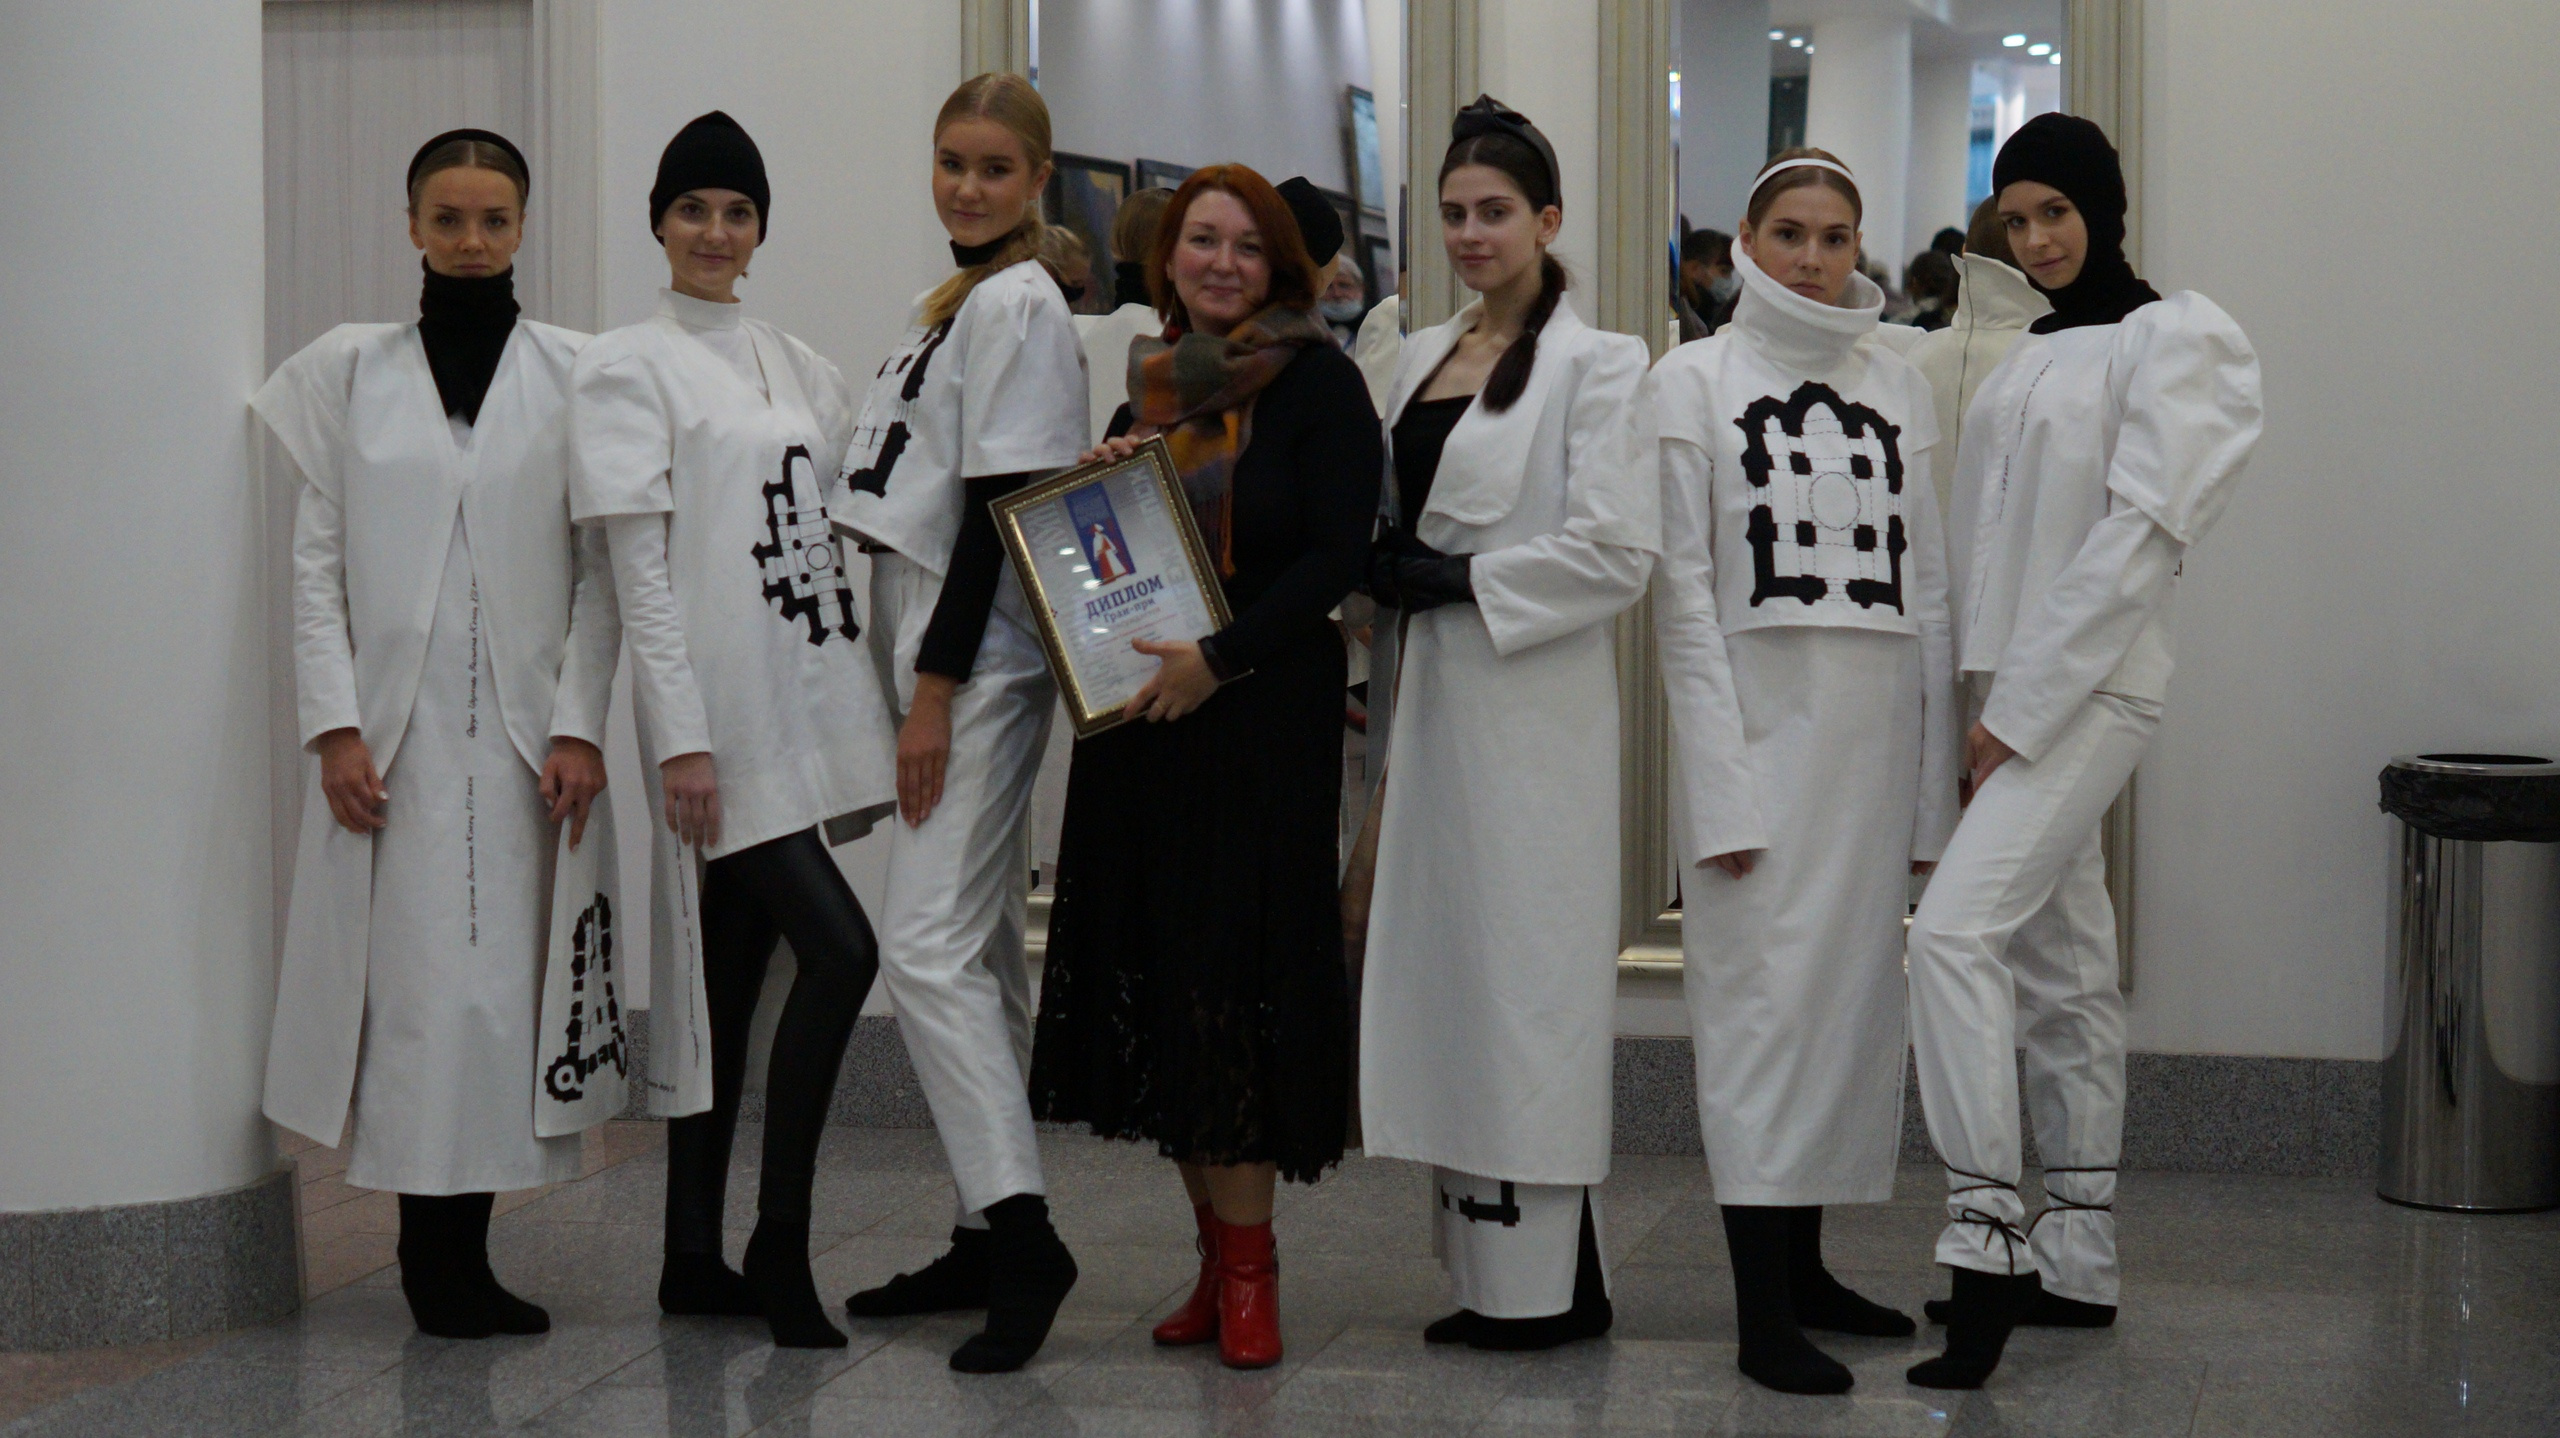 Коллекция одежды под названием «АрхиГрафично» взяла Гран-при конкурса в номинации «Современный авторский костюм»